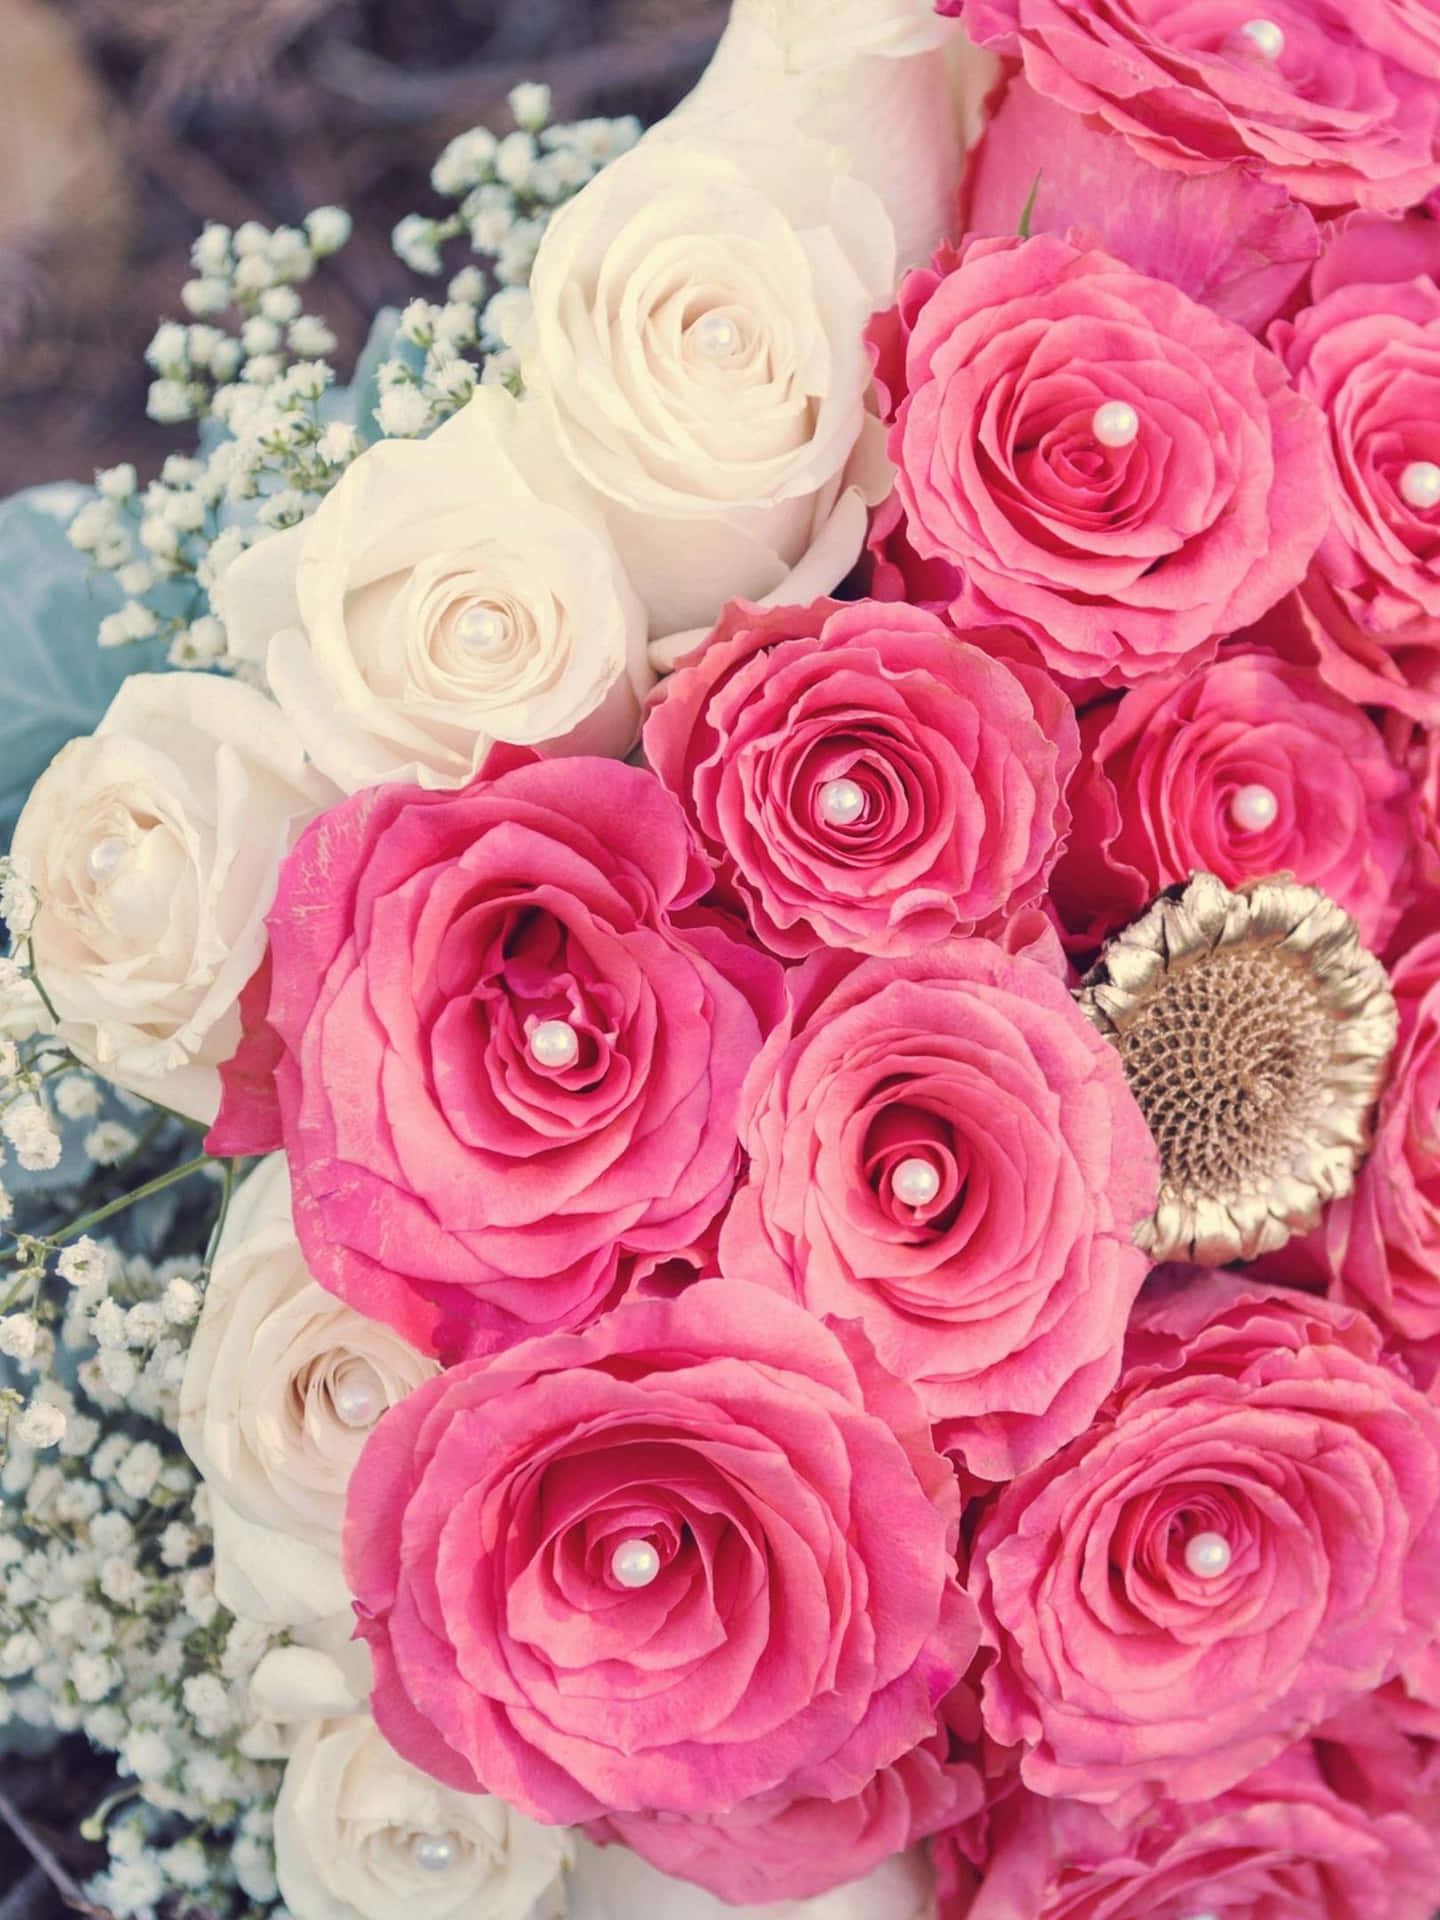 Immaginidi Bouquet Di Rose Rosa E Bianche